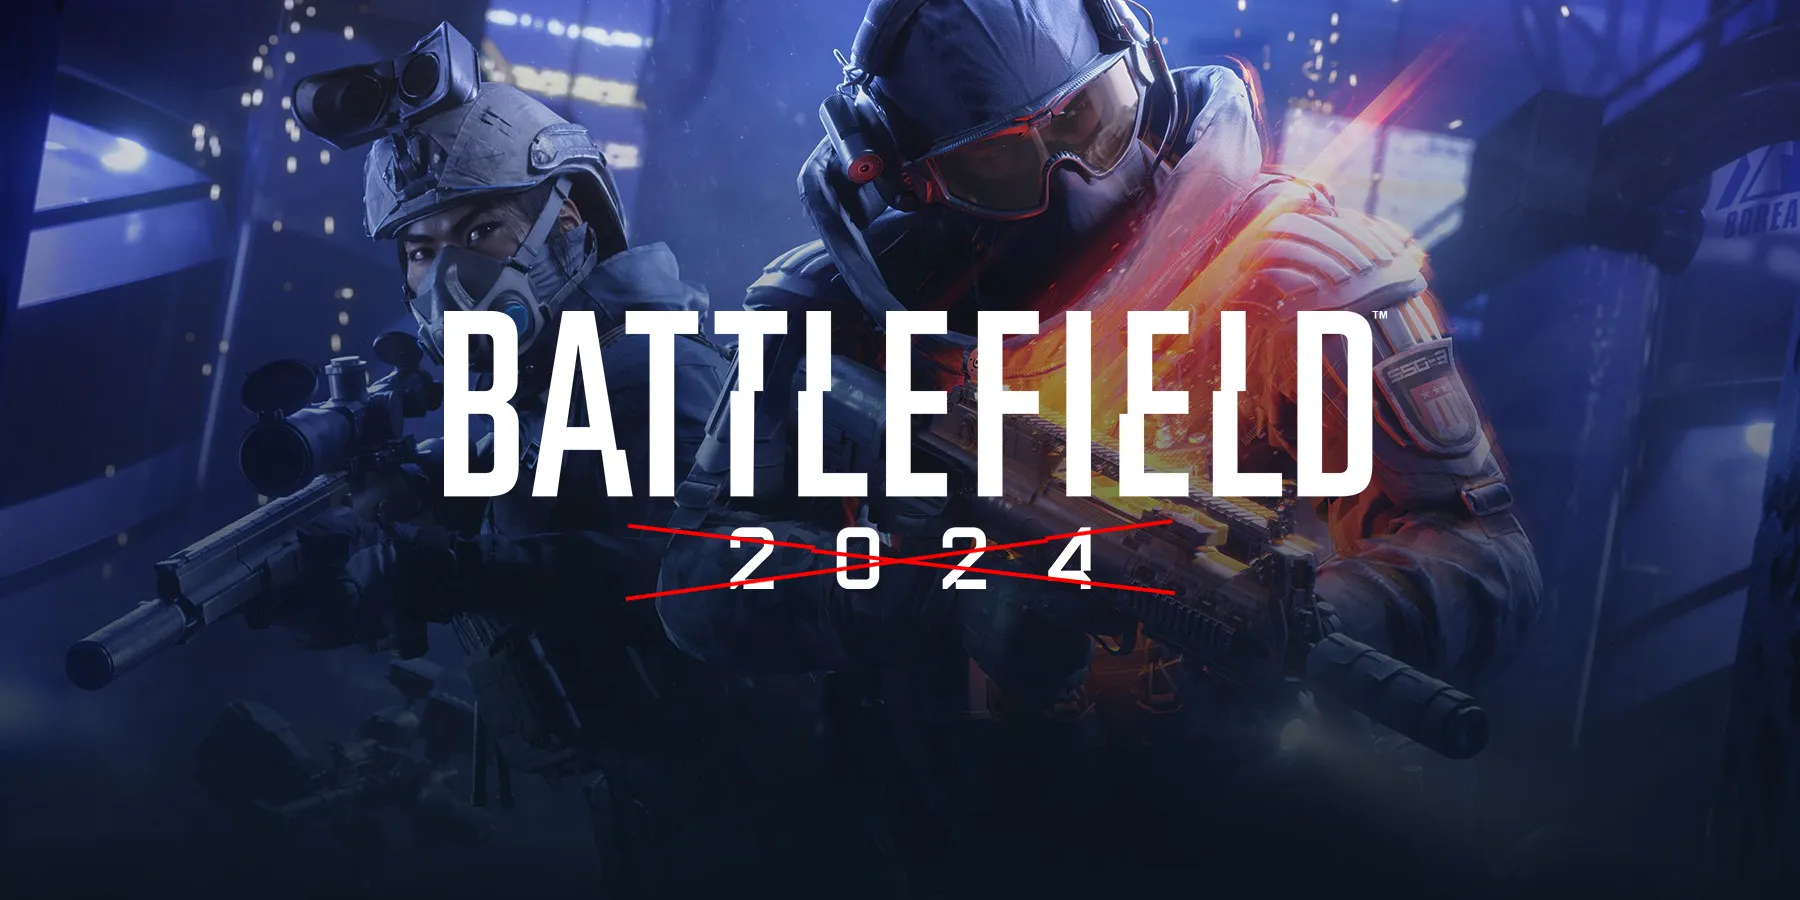 Parece que o próximo jogo Battlefield não será lançado antes de 2025!